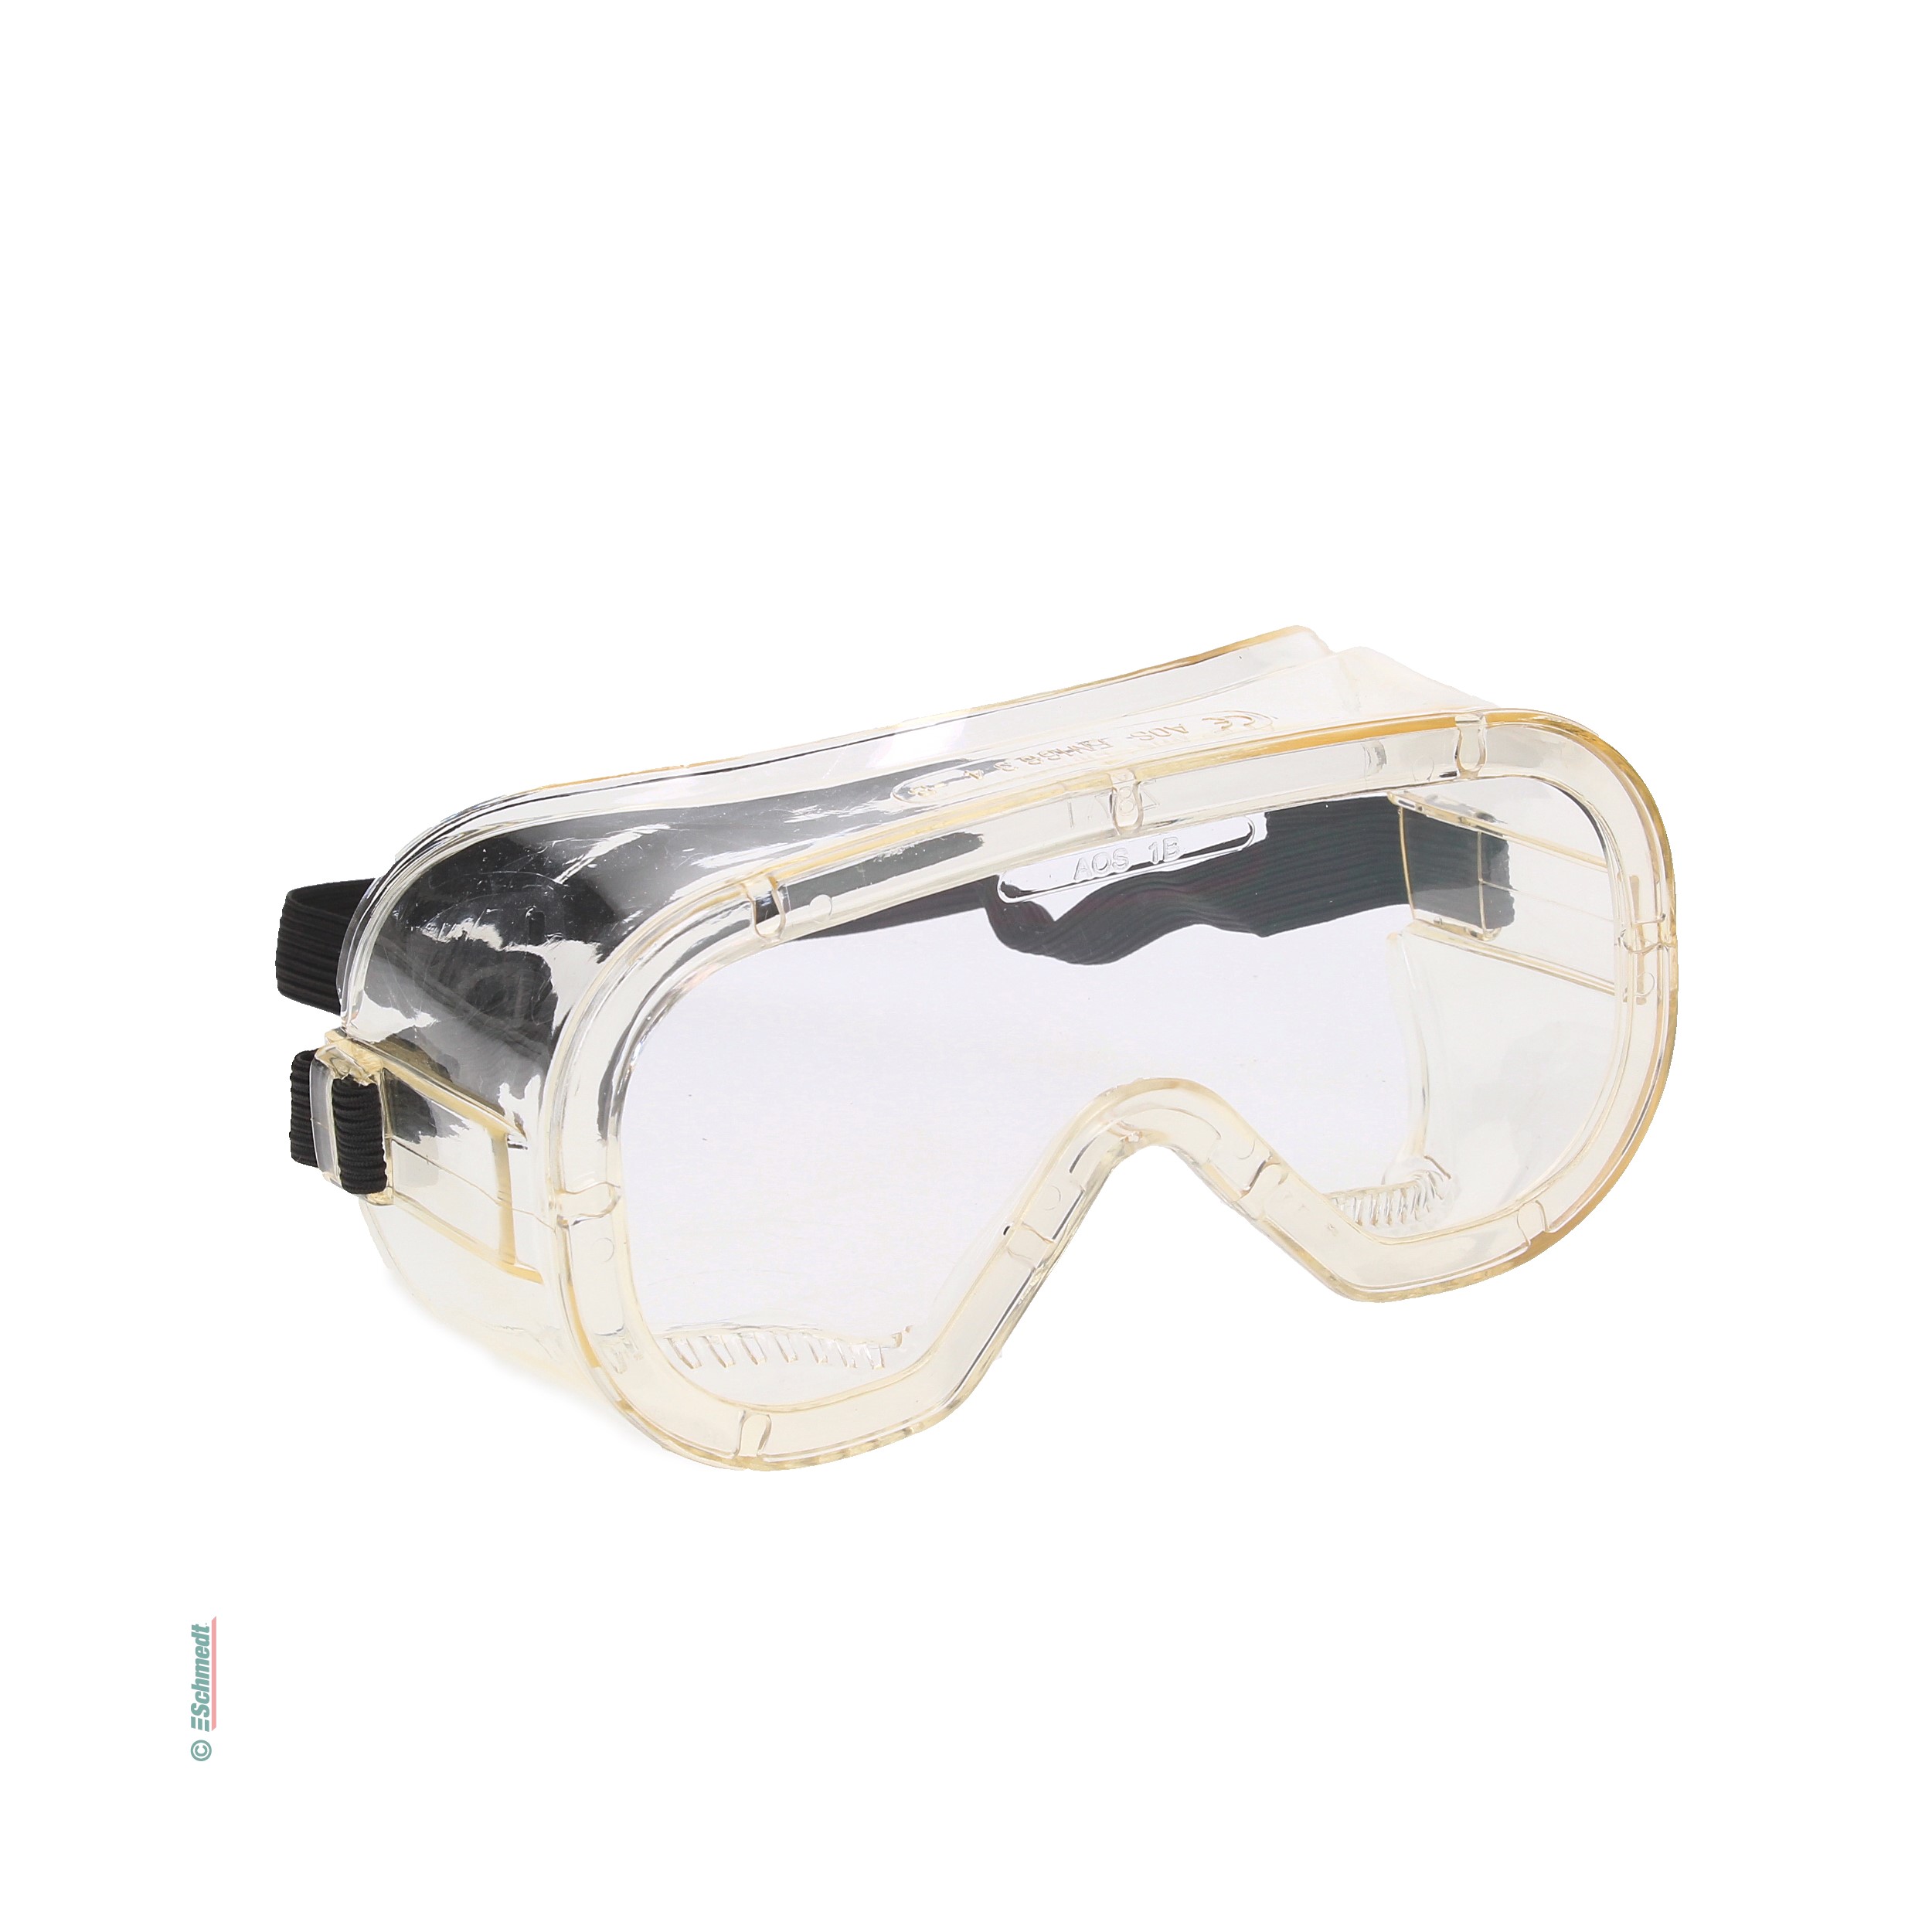 Gafas de protección integrales - con ventilación indirecta - protege de químicos, polvo, salpicaduras...